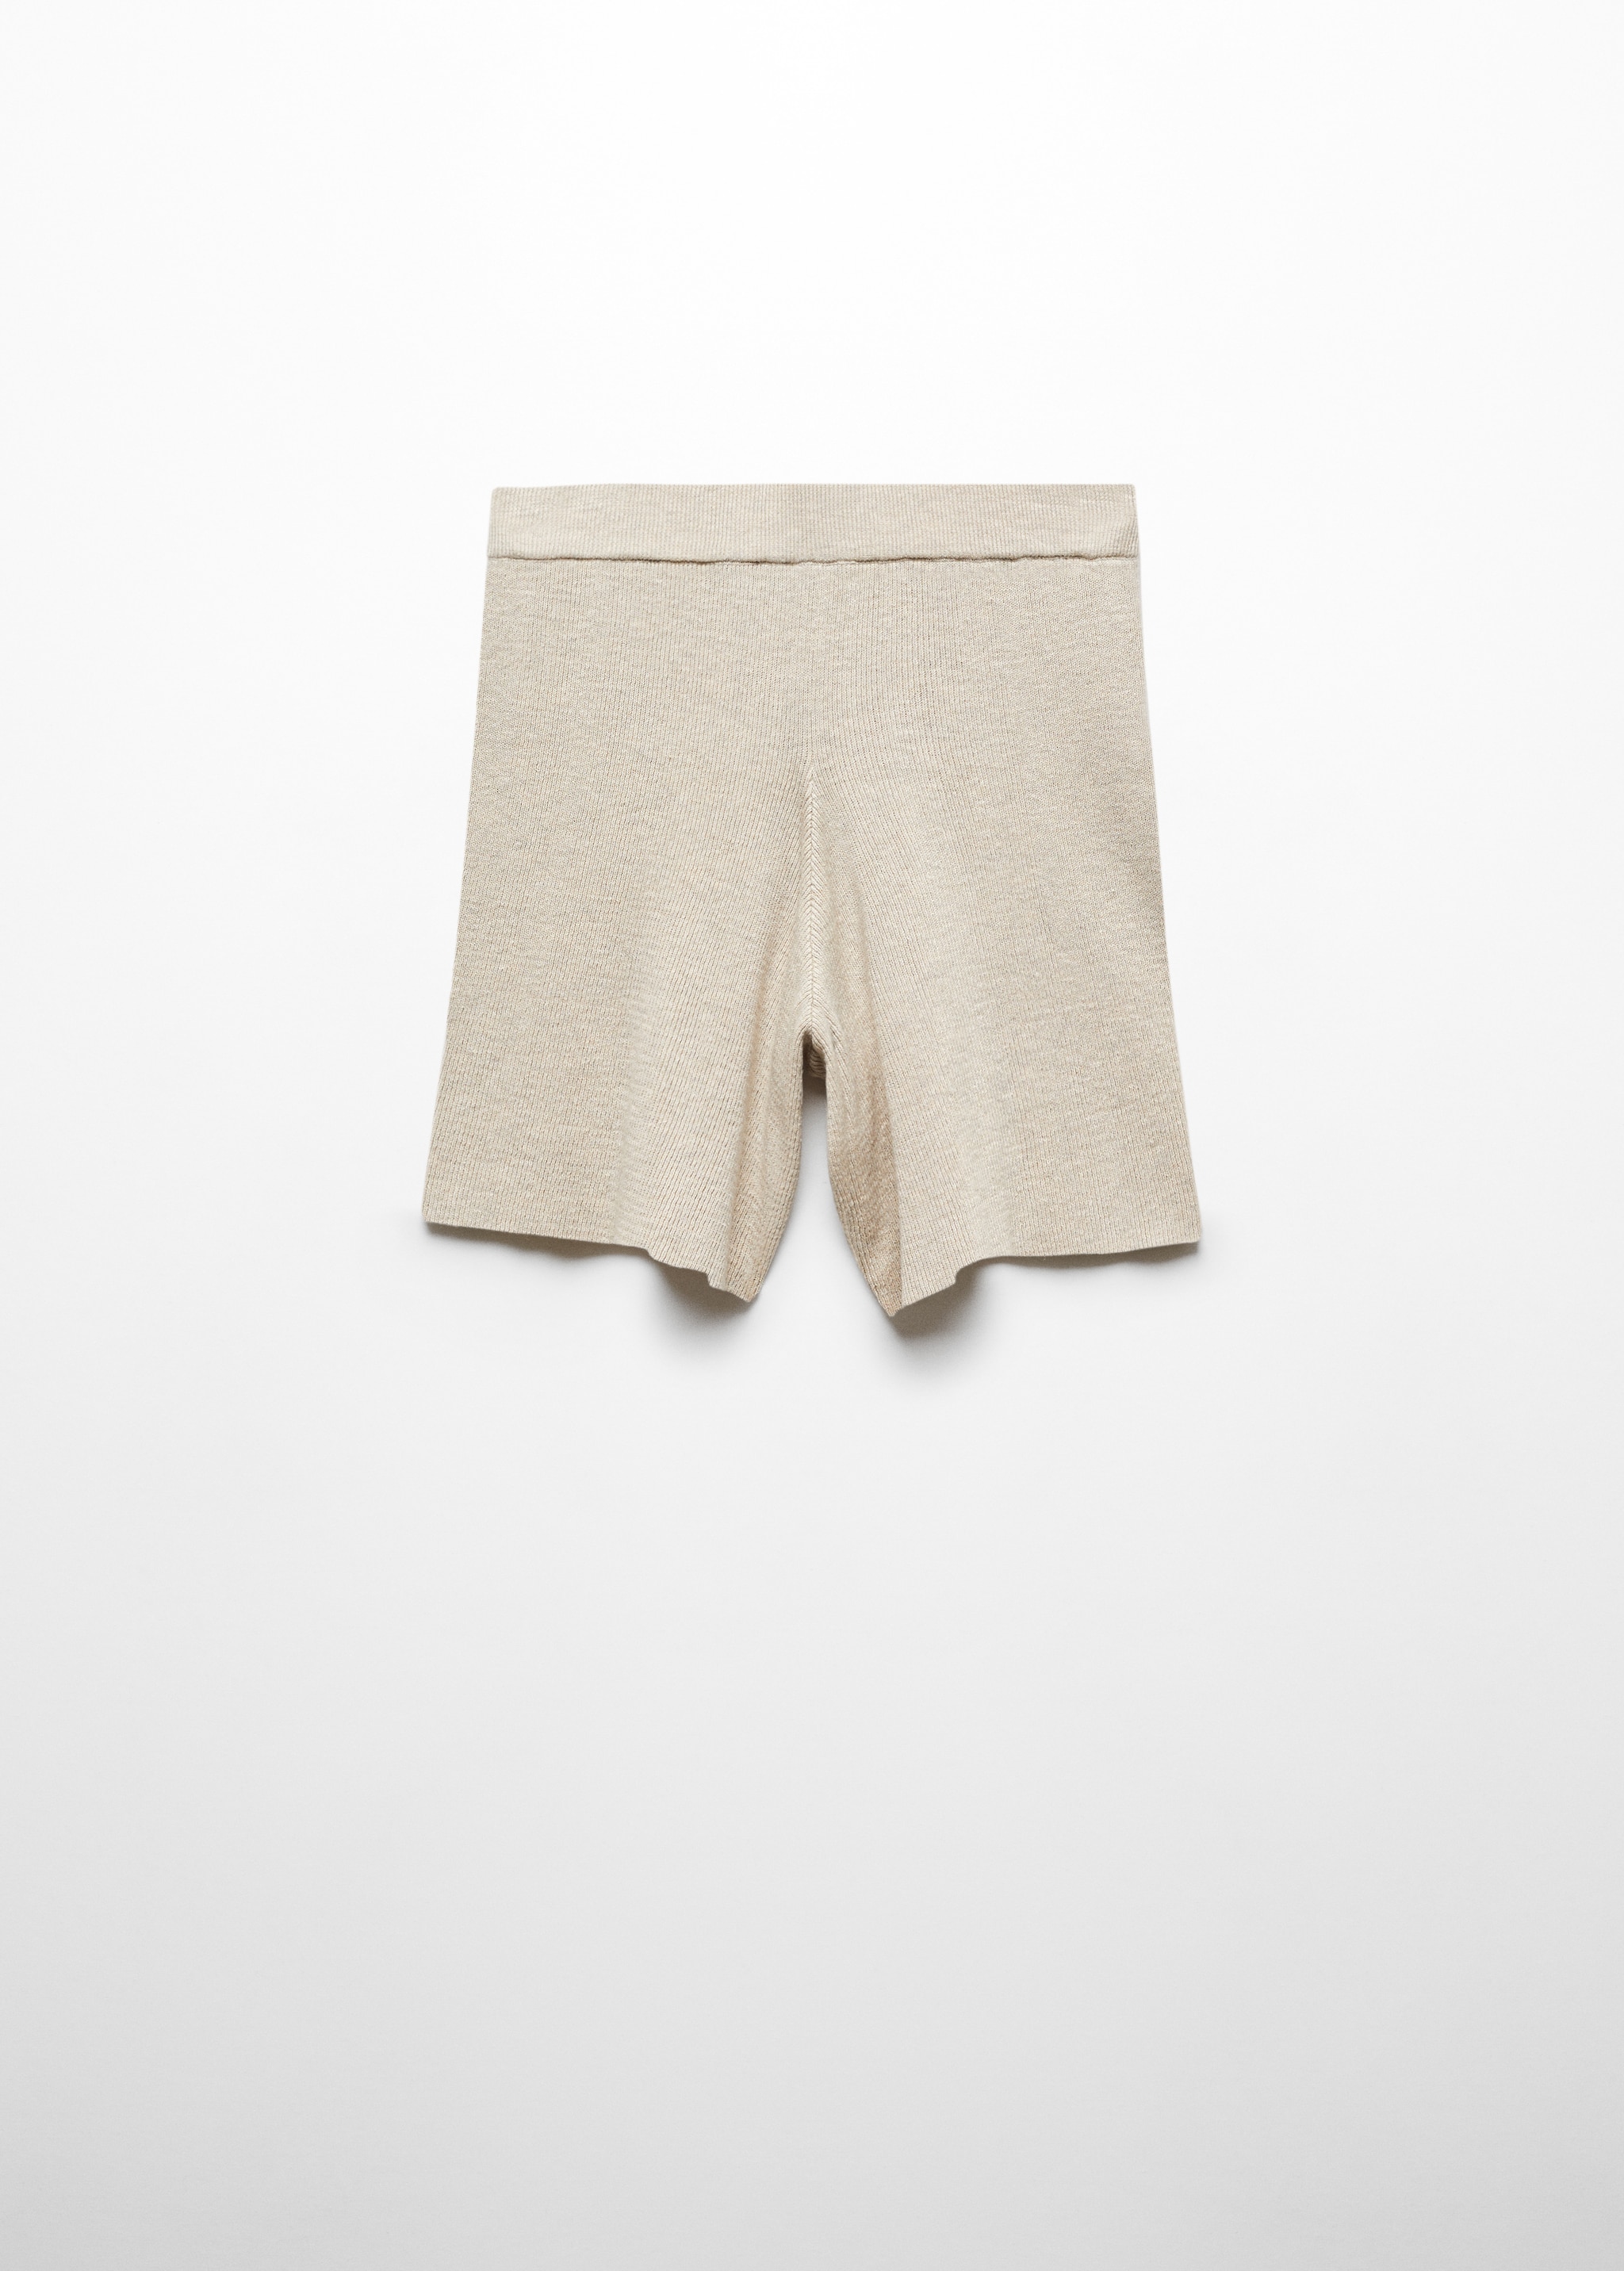 Shorts pijama punto algodón lino - Artículo sin modelo